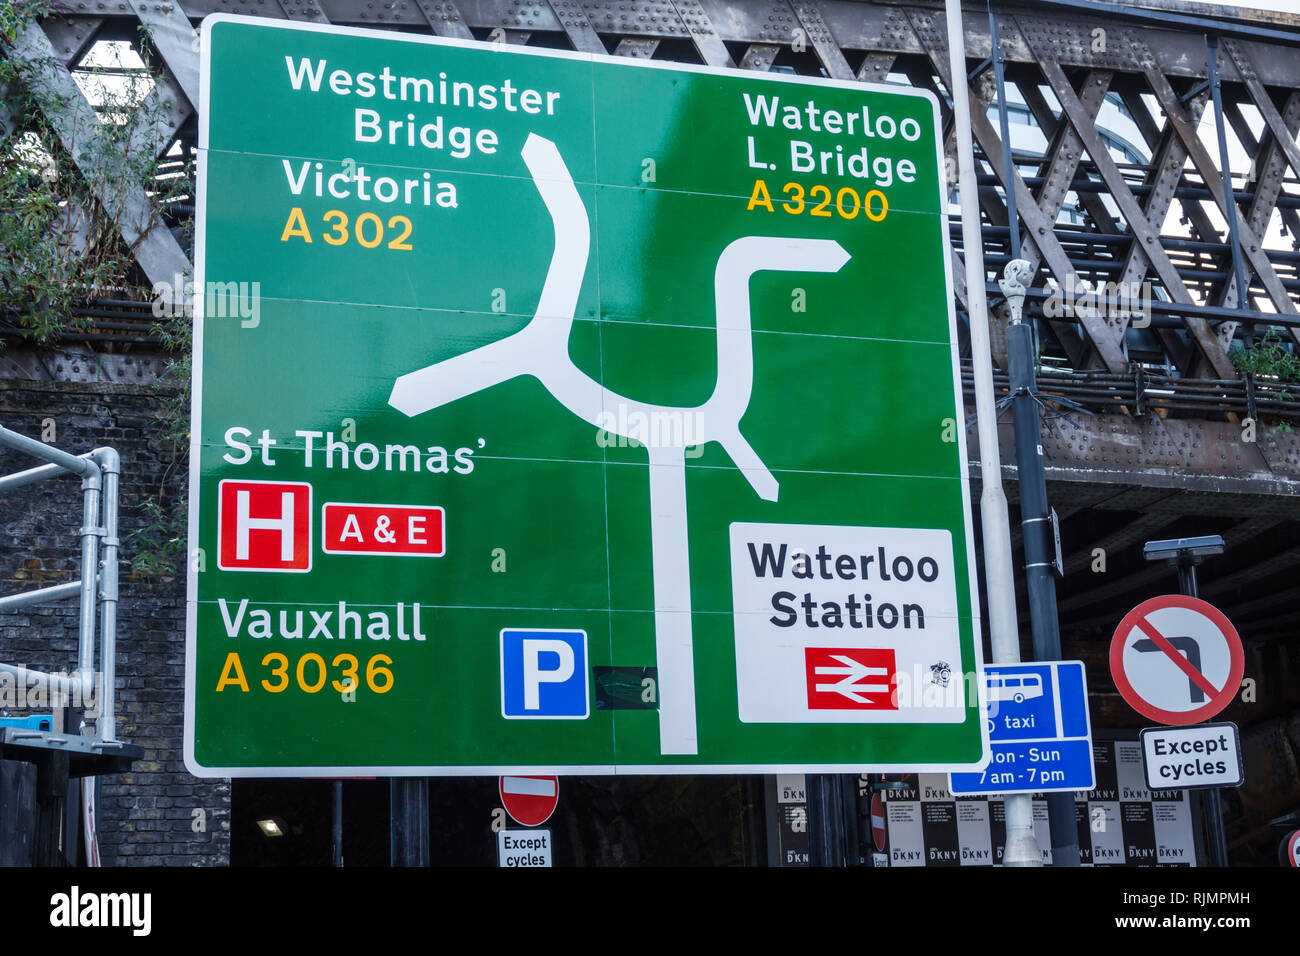 Vereinigtes Königreich Großbritannien England London Lambeth South Bank Waterloo Straßenkarte Richtungsverkehr Straßenschild Sightseeing Besucher Reisen tra Stockfoto